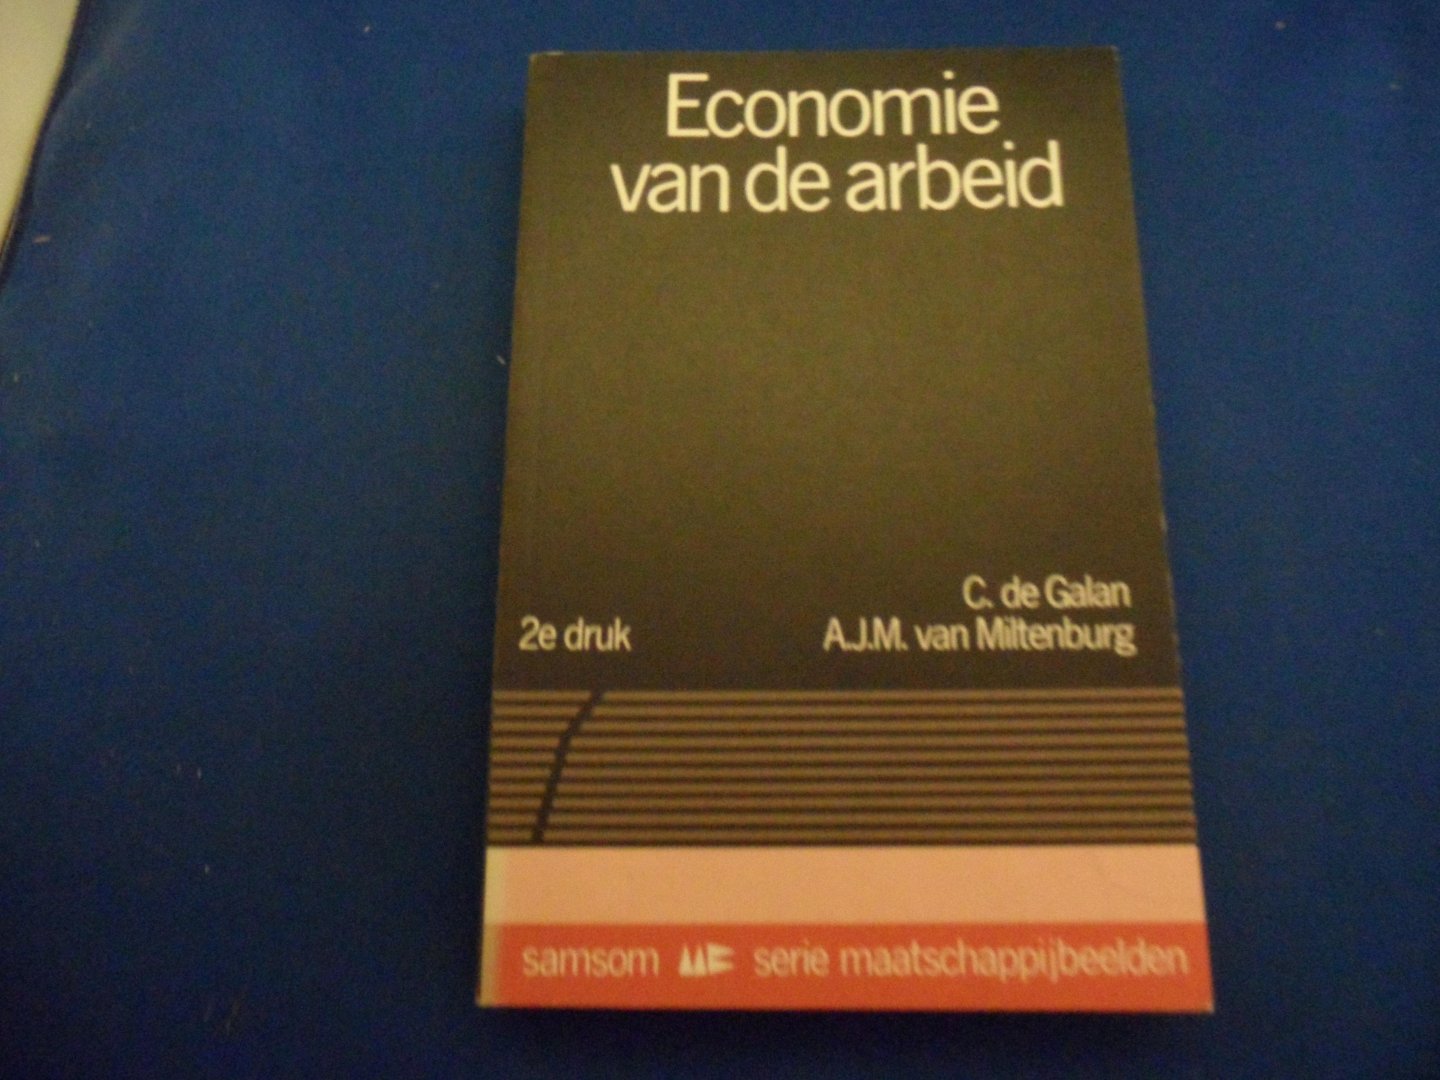 Galan, C. de en Miltenburg, A.J.M. - Economie van de arbeid.